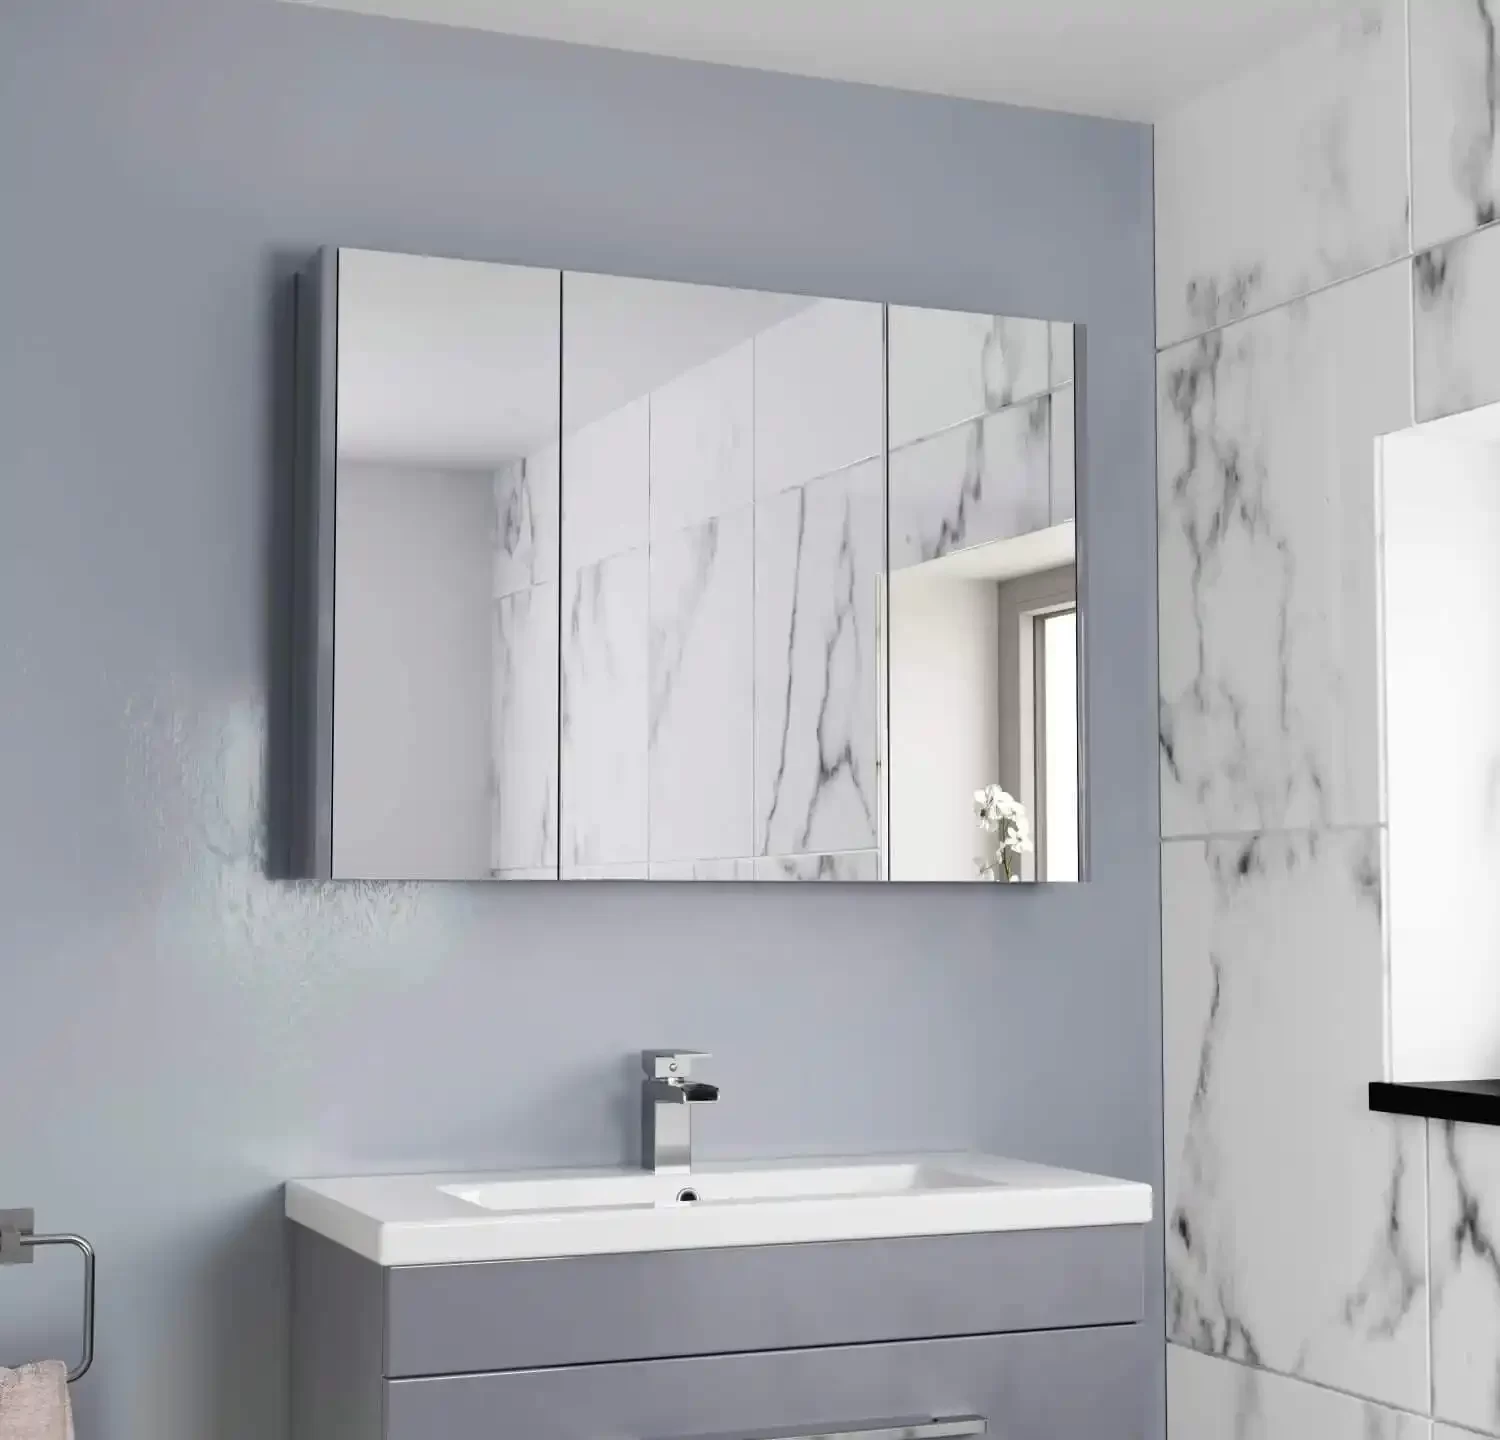 Stainless Steel Bathroom Cabinet with Mirror Bathroom Vanity Modern